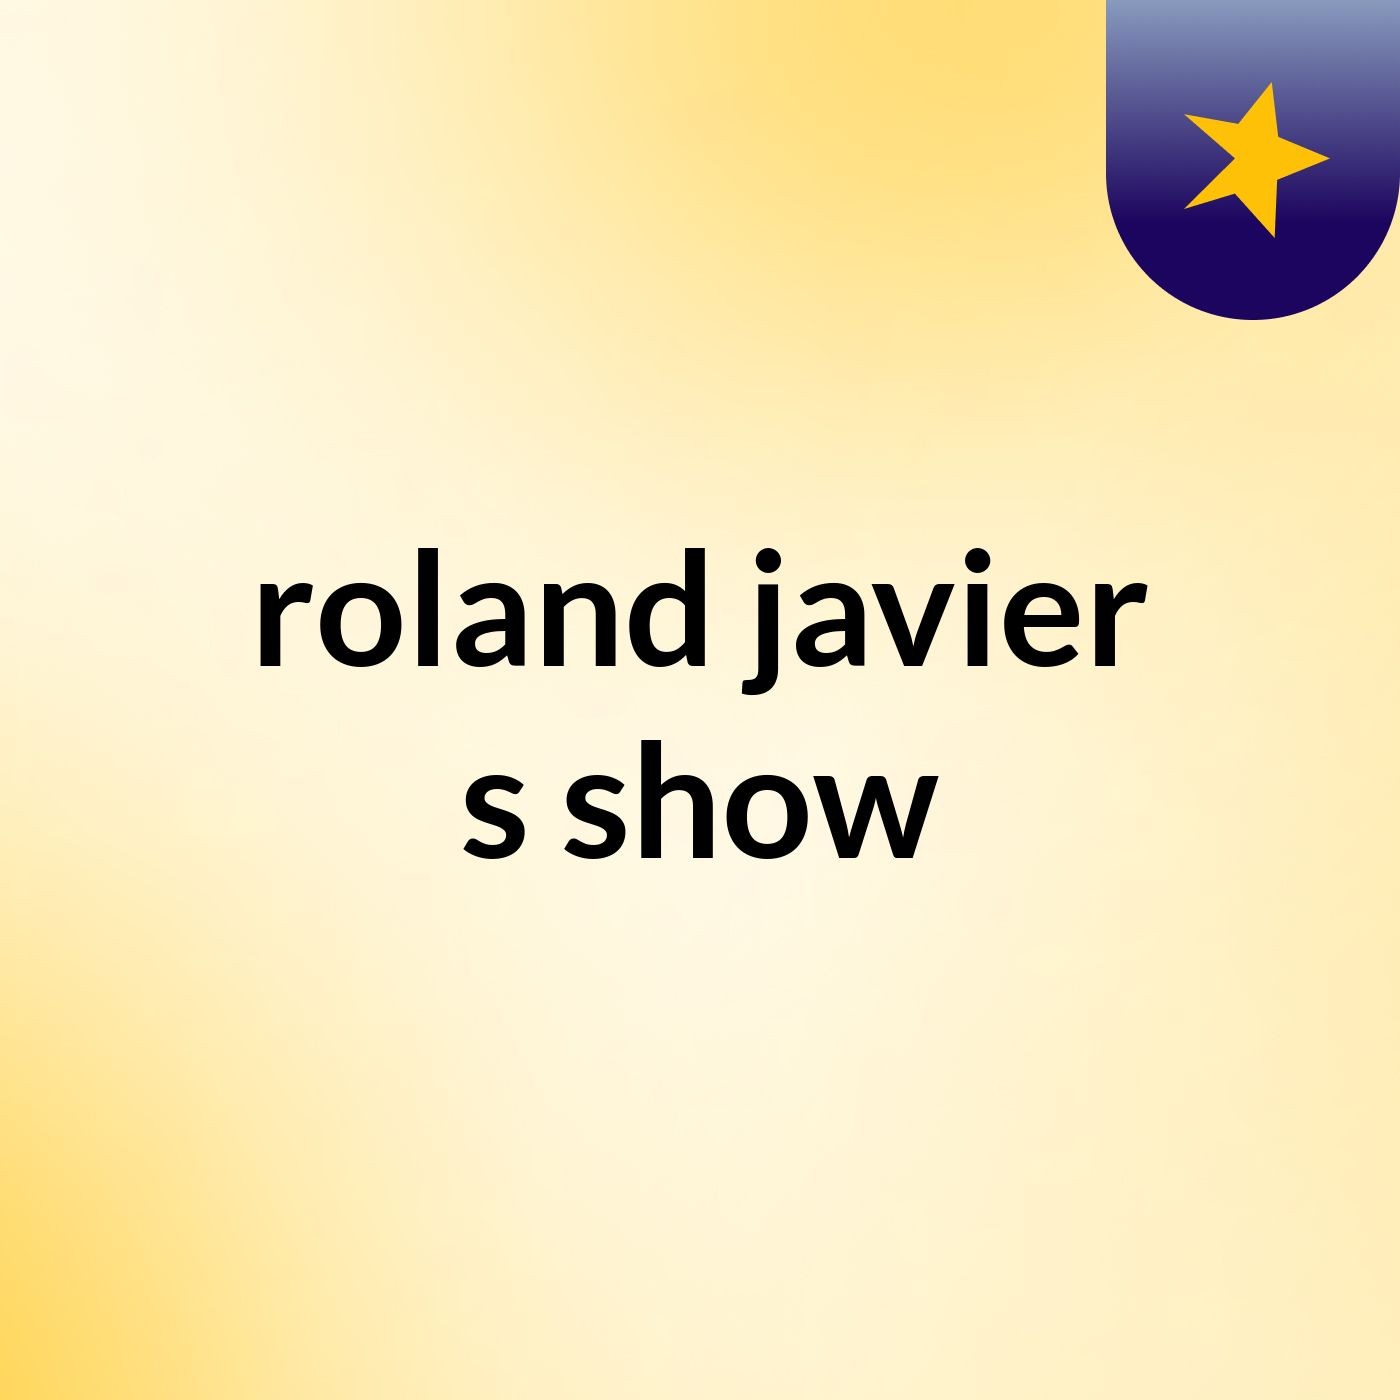 roland javier's show